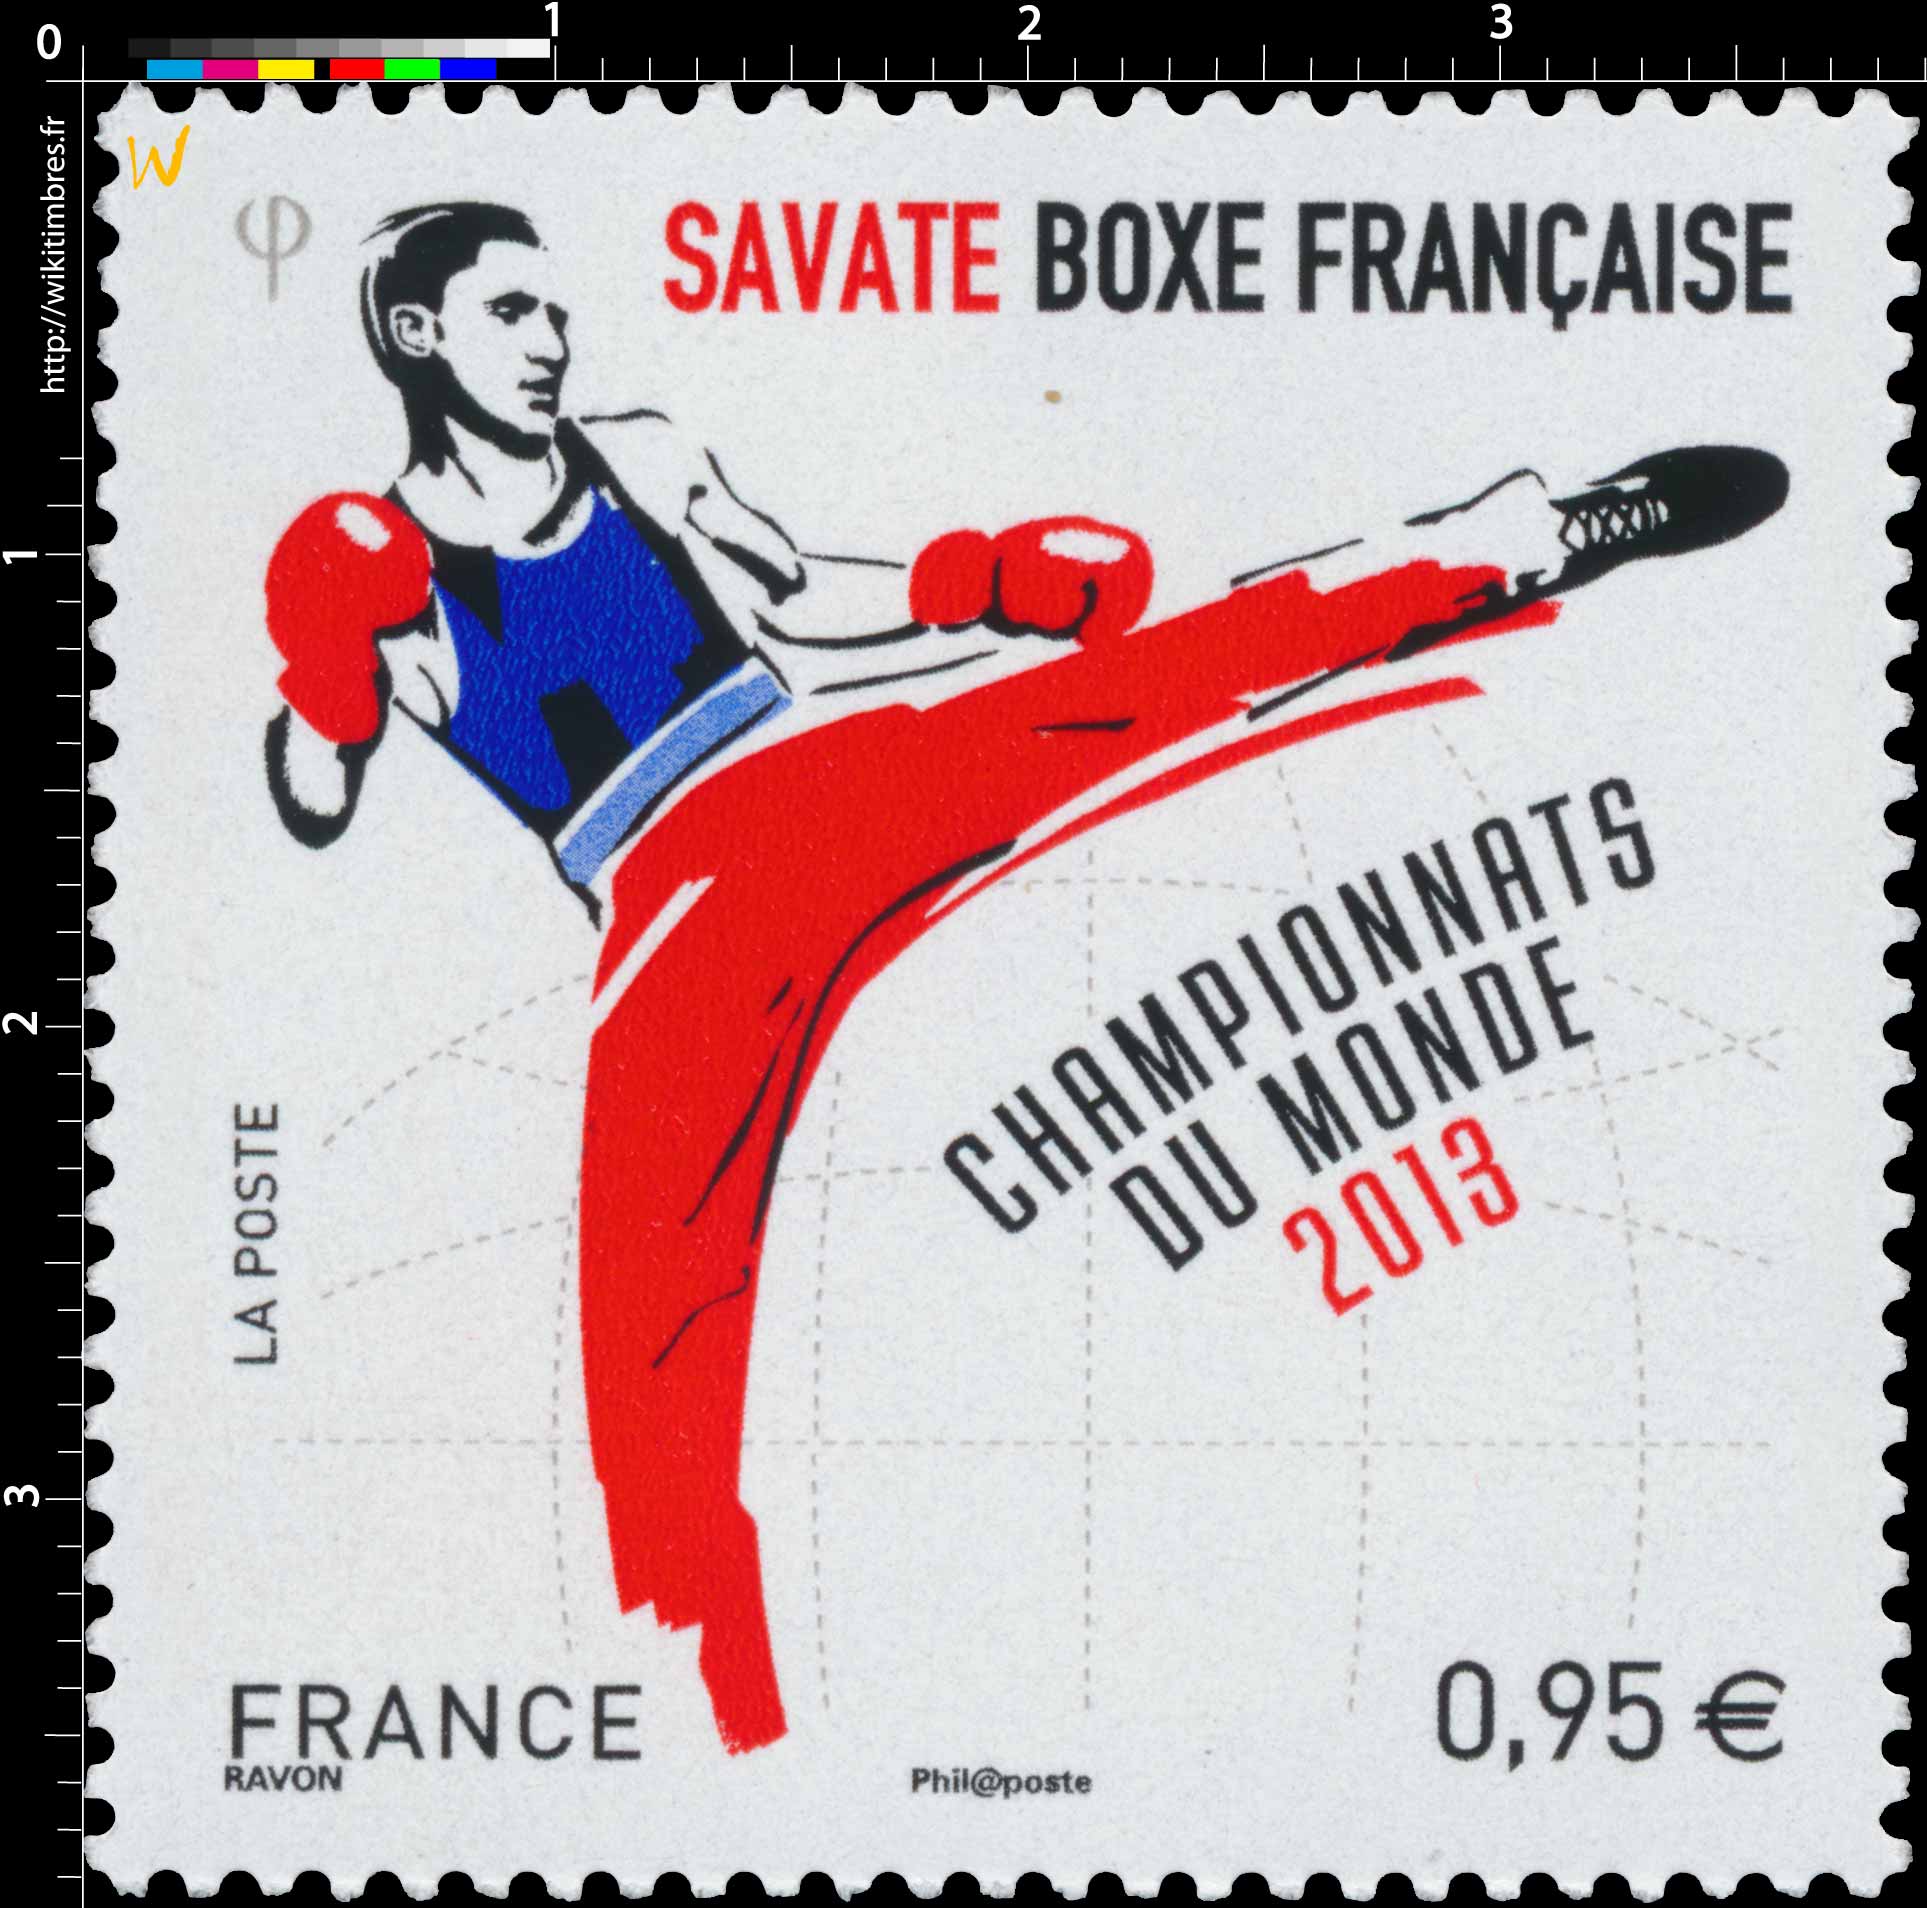 Championnats du Monde 2013 - Savate Boxe française